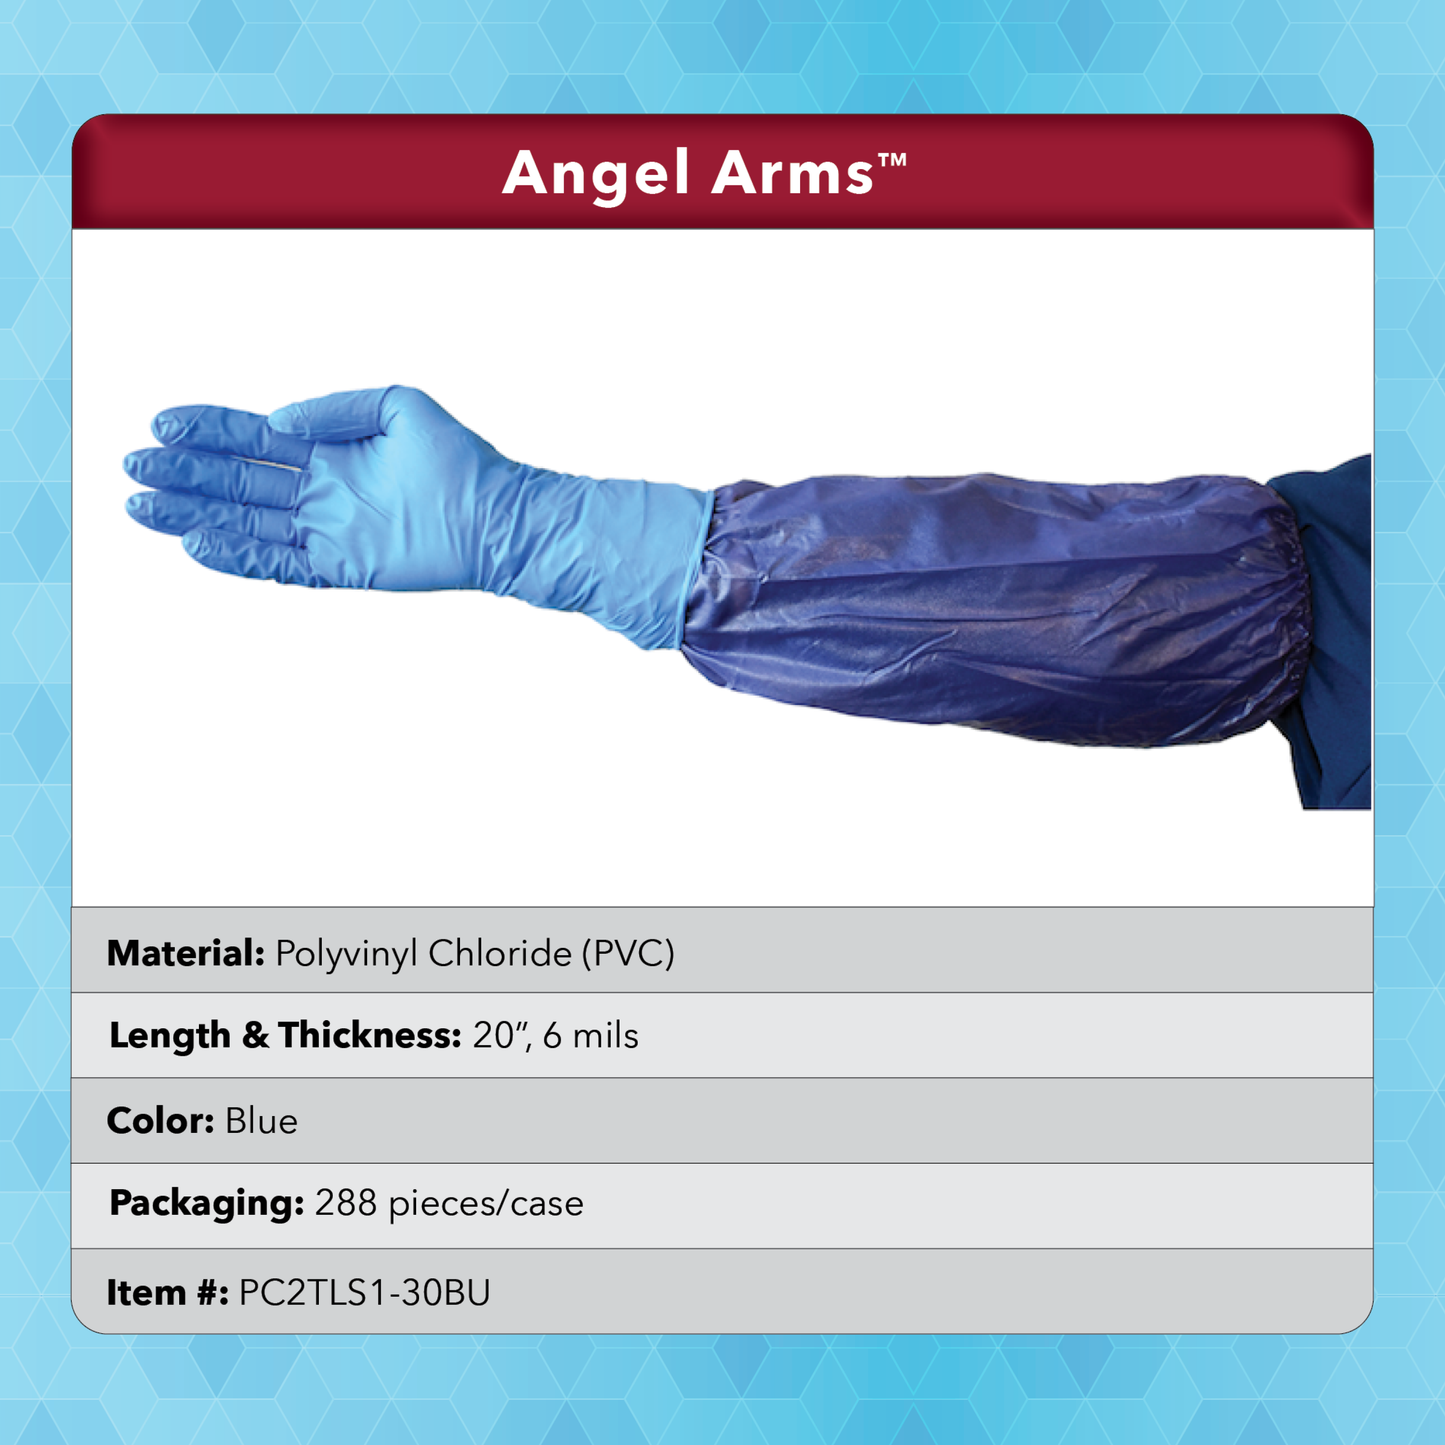 Product description: Angel Arms 